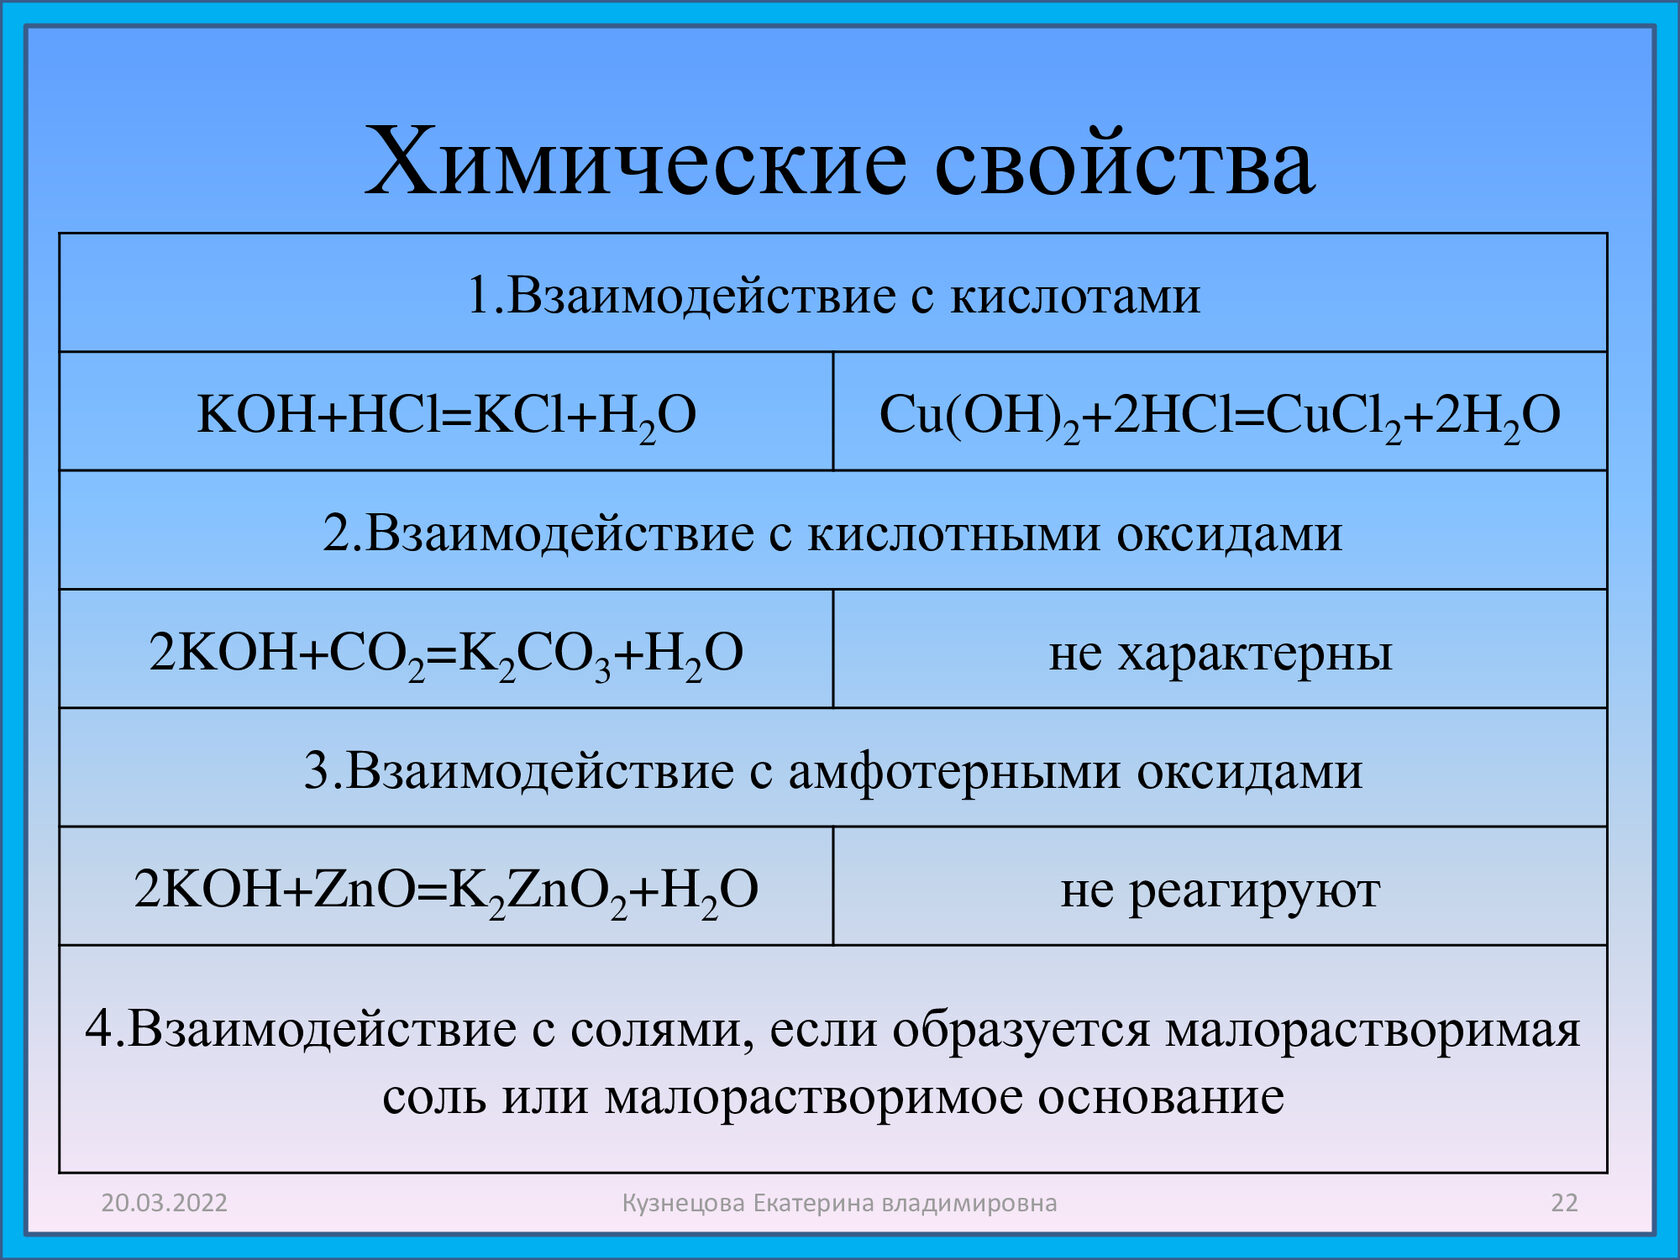 Co oh 2 класс неорганических соединений. Химические свойства. Koh химические свойства. Koh взаимодействует с. Химические свойства взаимодействие с кислотами.